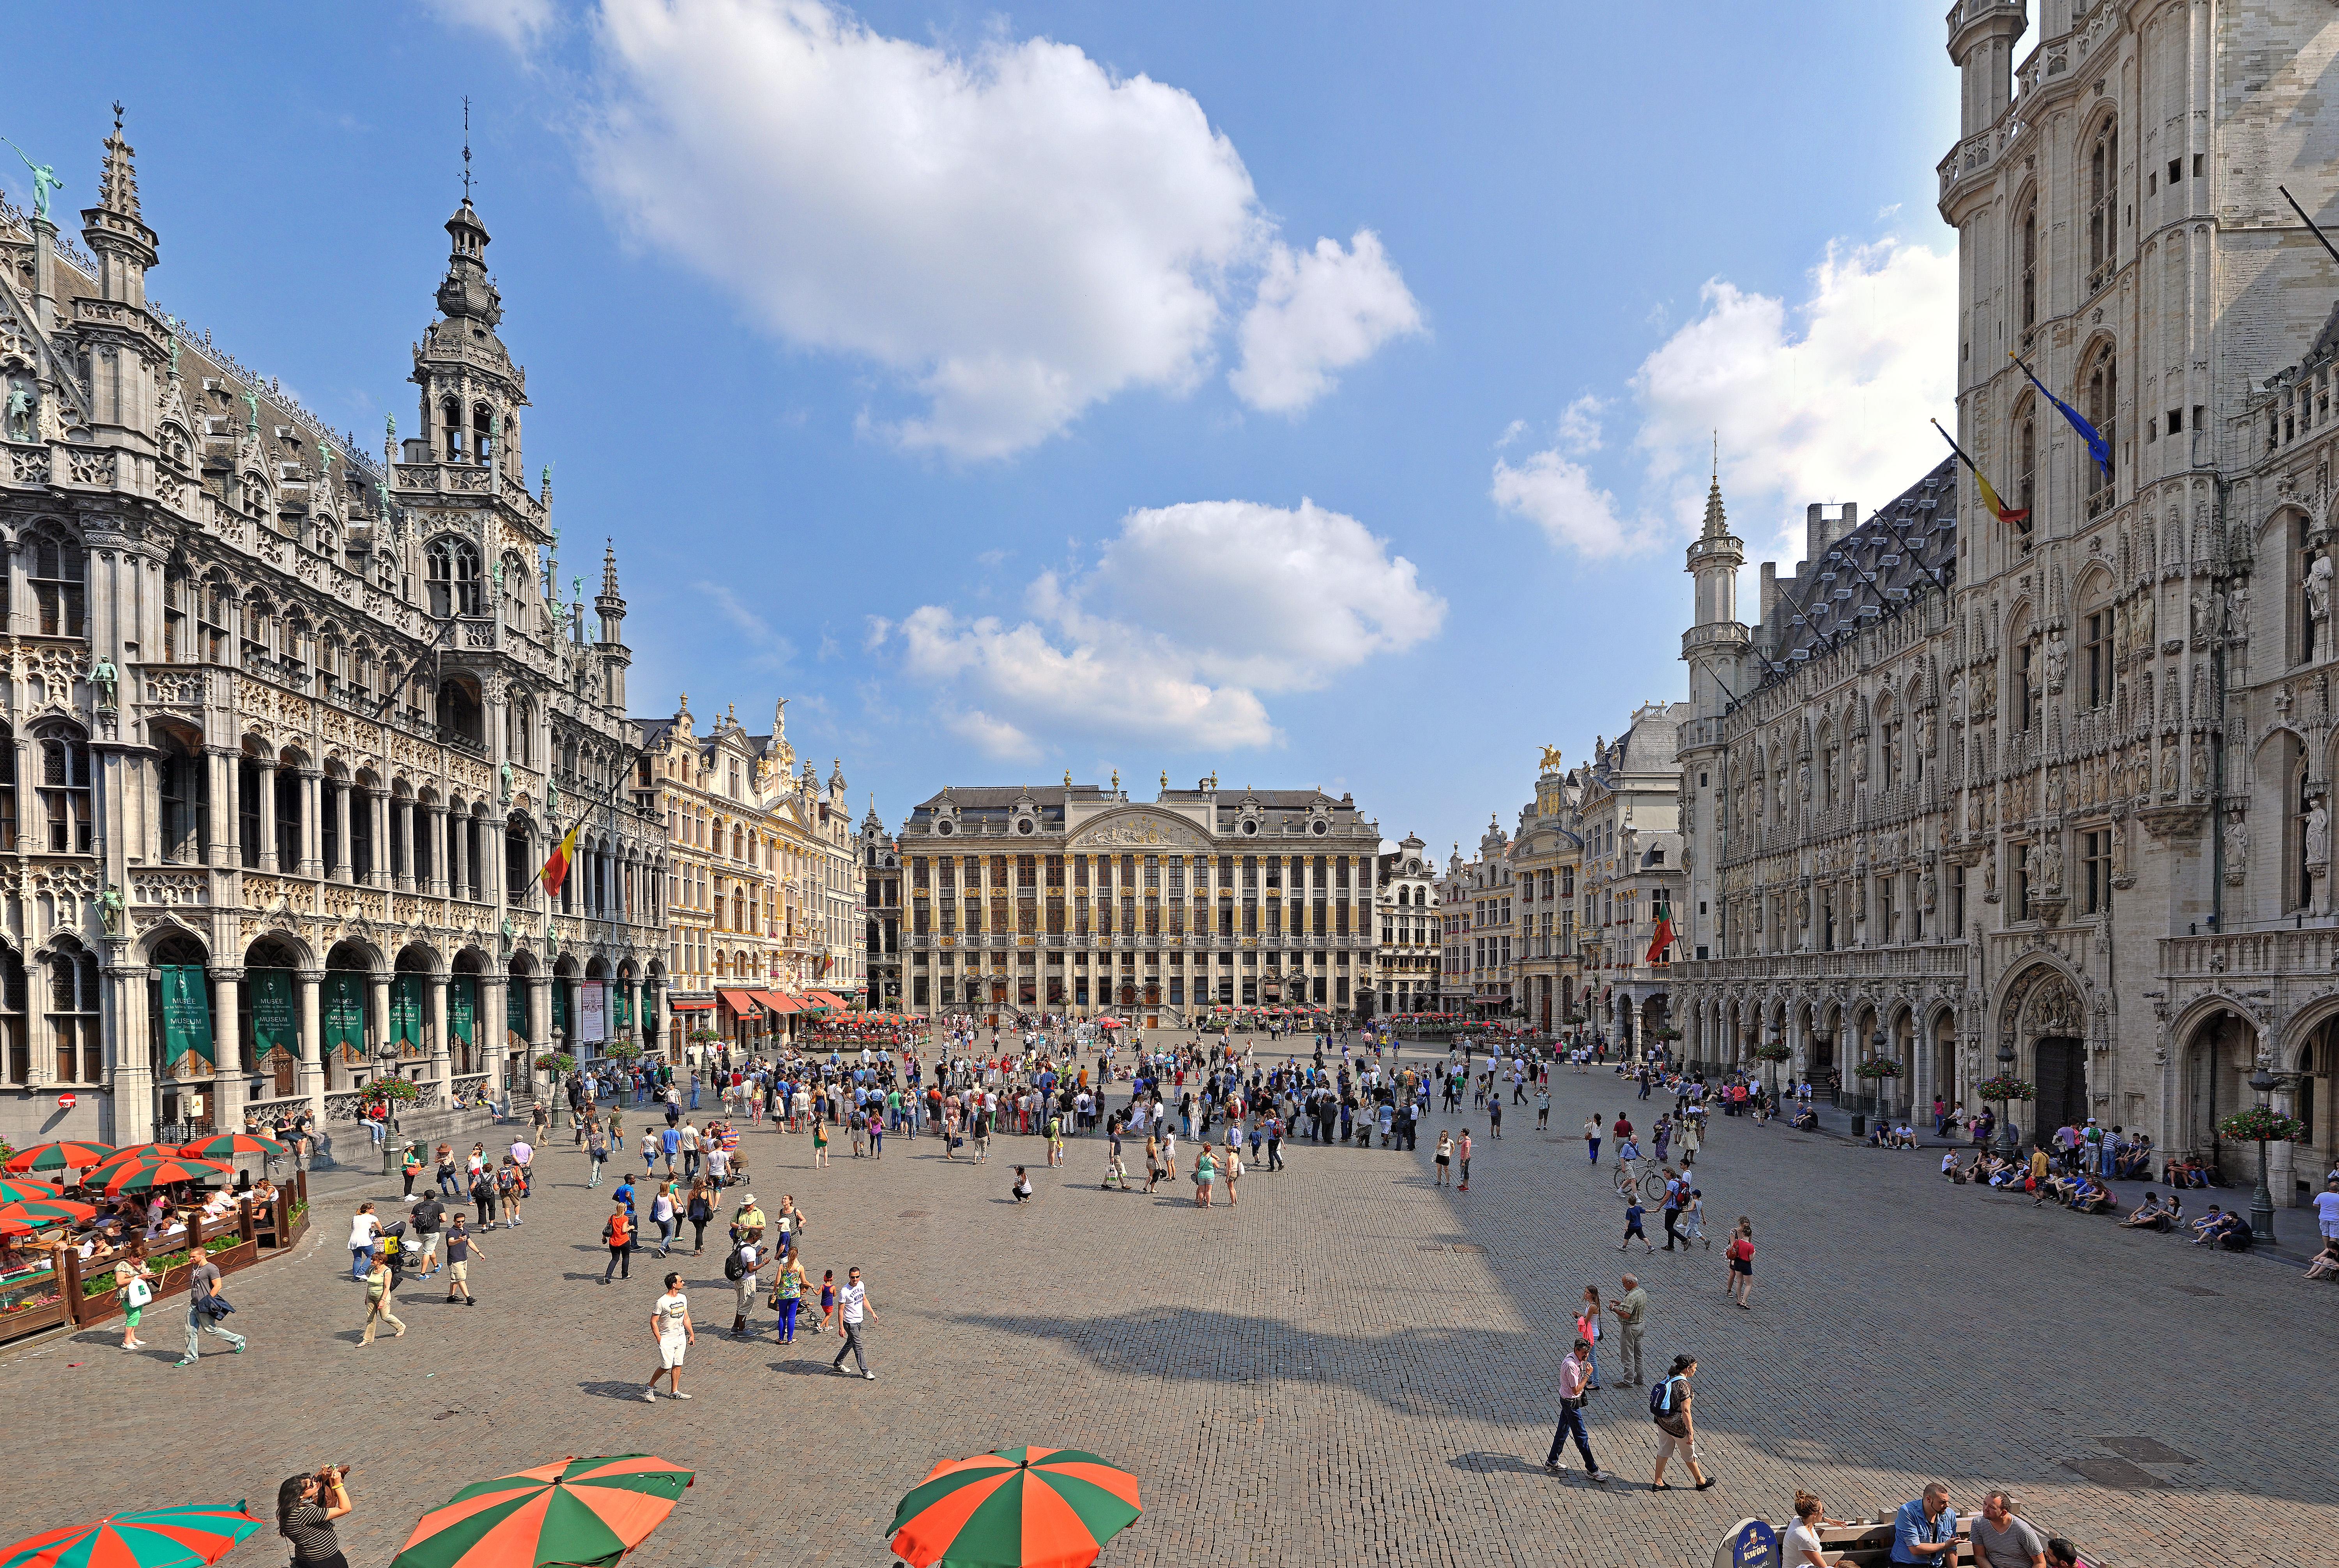 Color Photograph Jean Pierre De Neef - Bruxelles Grand'Place - Été 2013 - Photographie panoramique contemporaine en couleurs